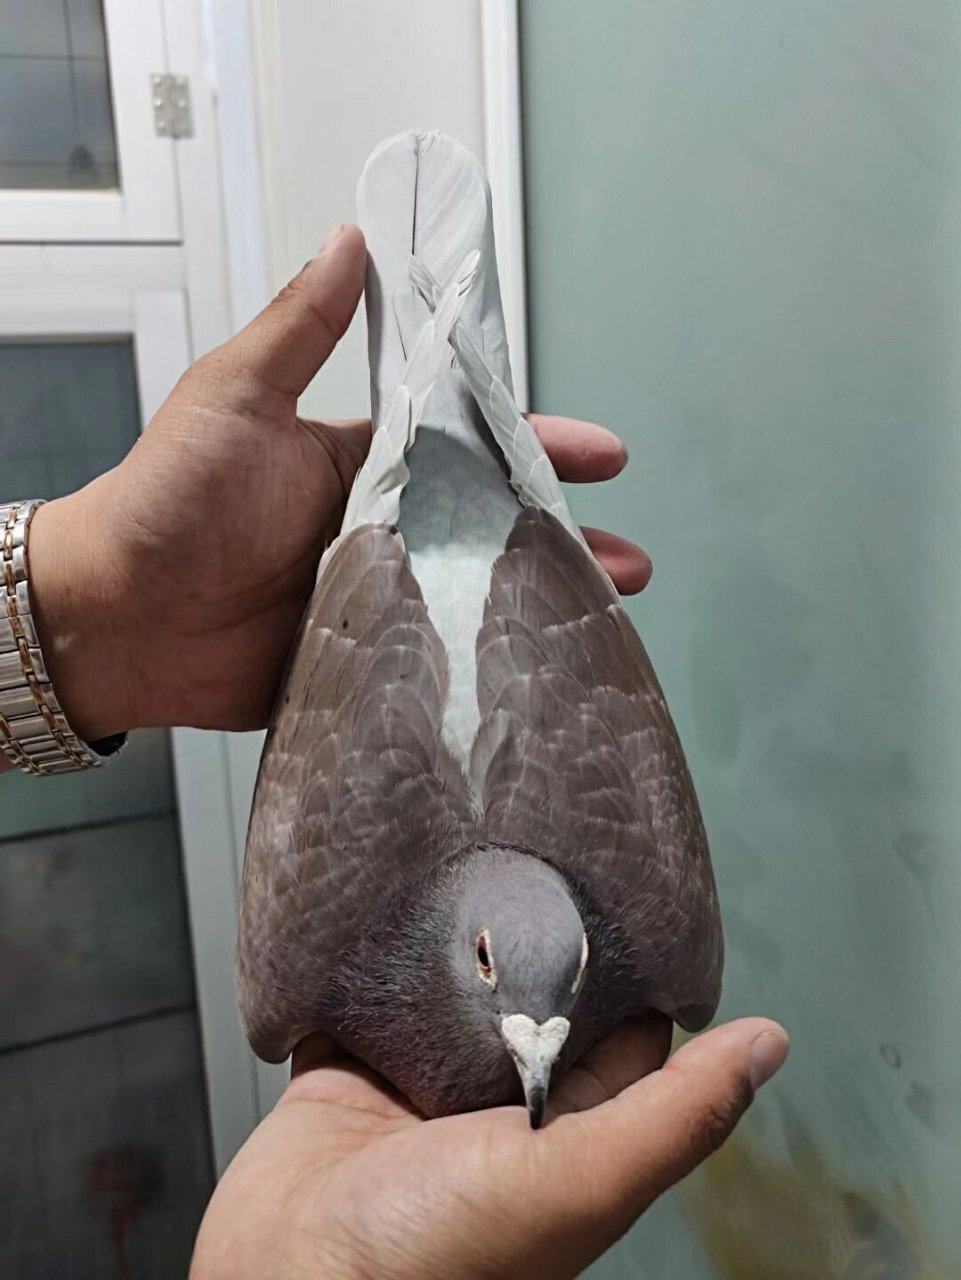 红绛溪翁种鸽赛鸽图片图片